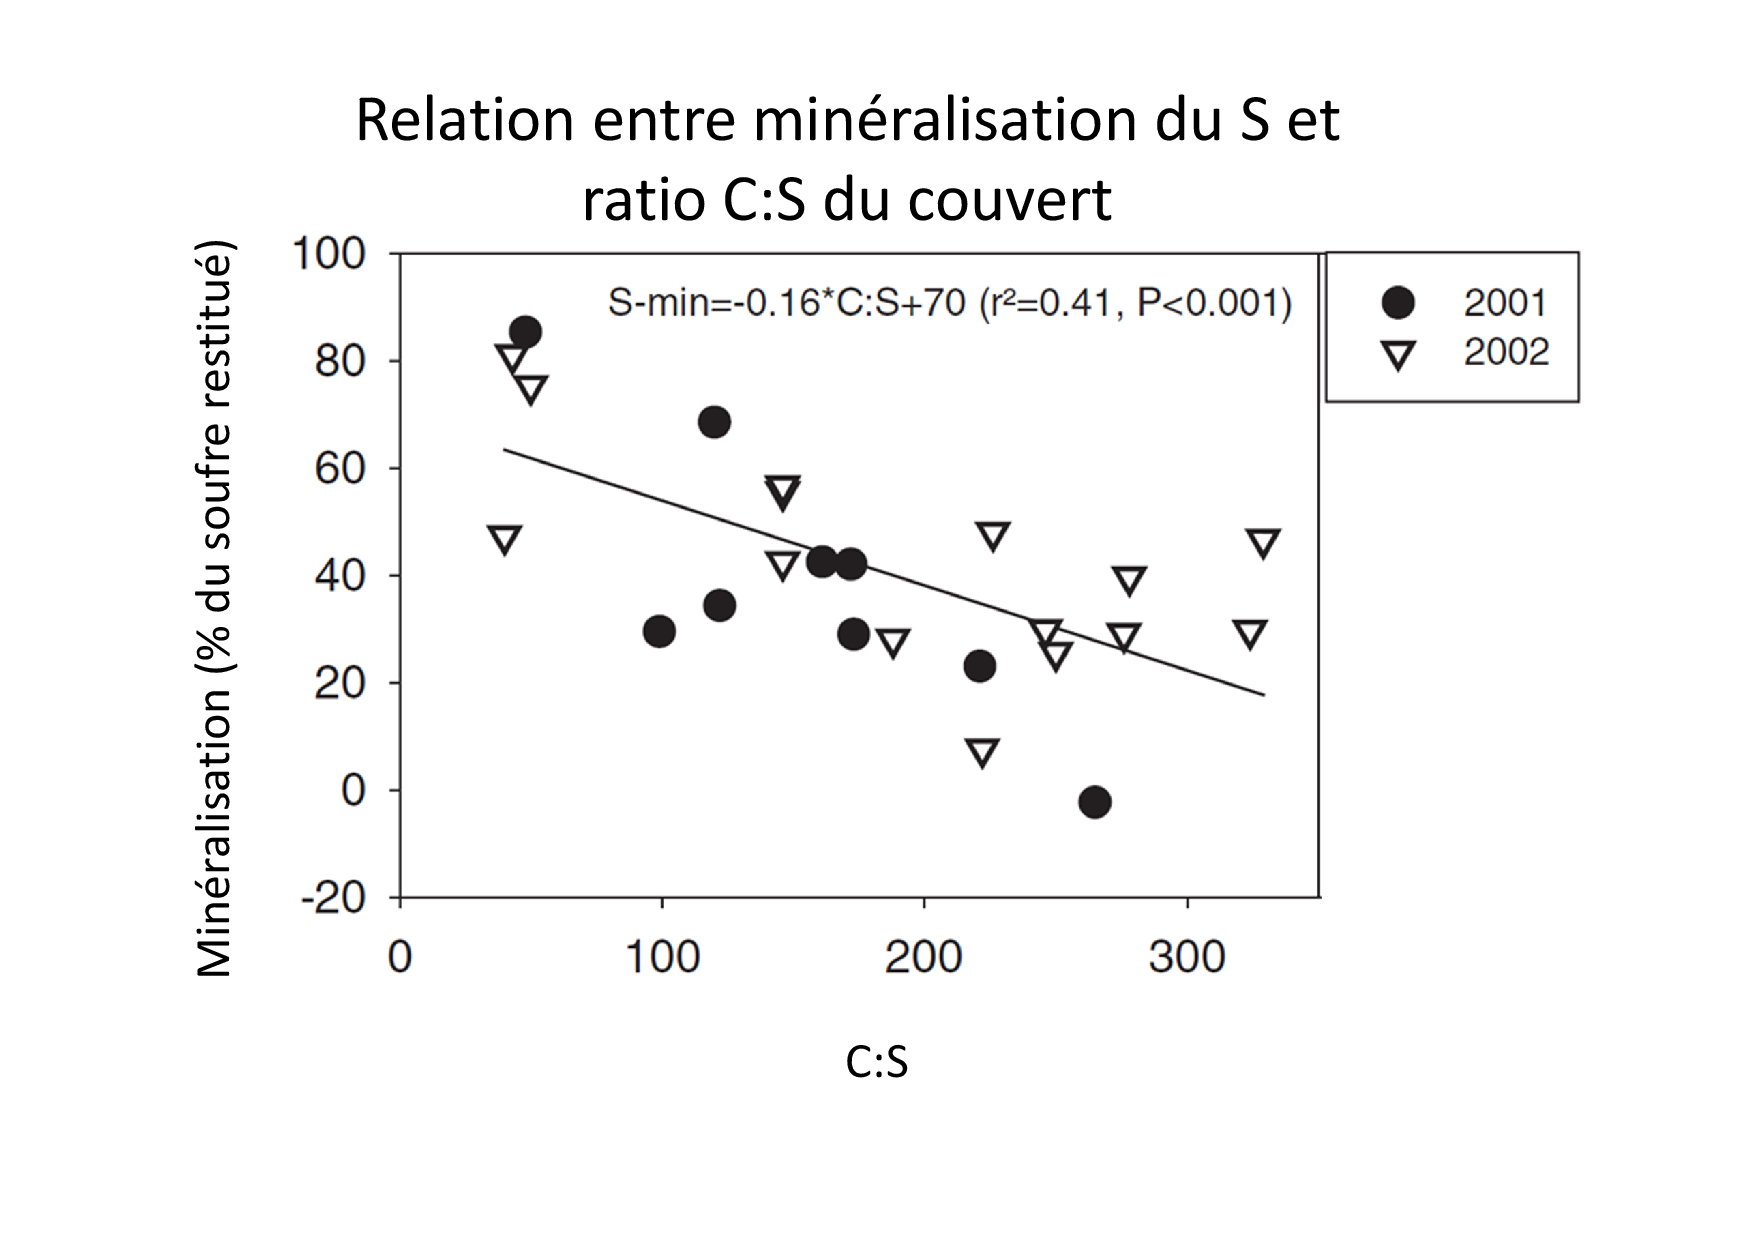 Relation en C:S et minéralisation 